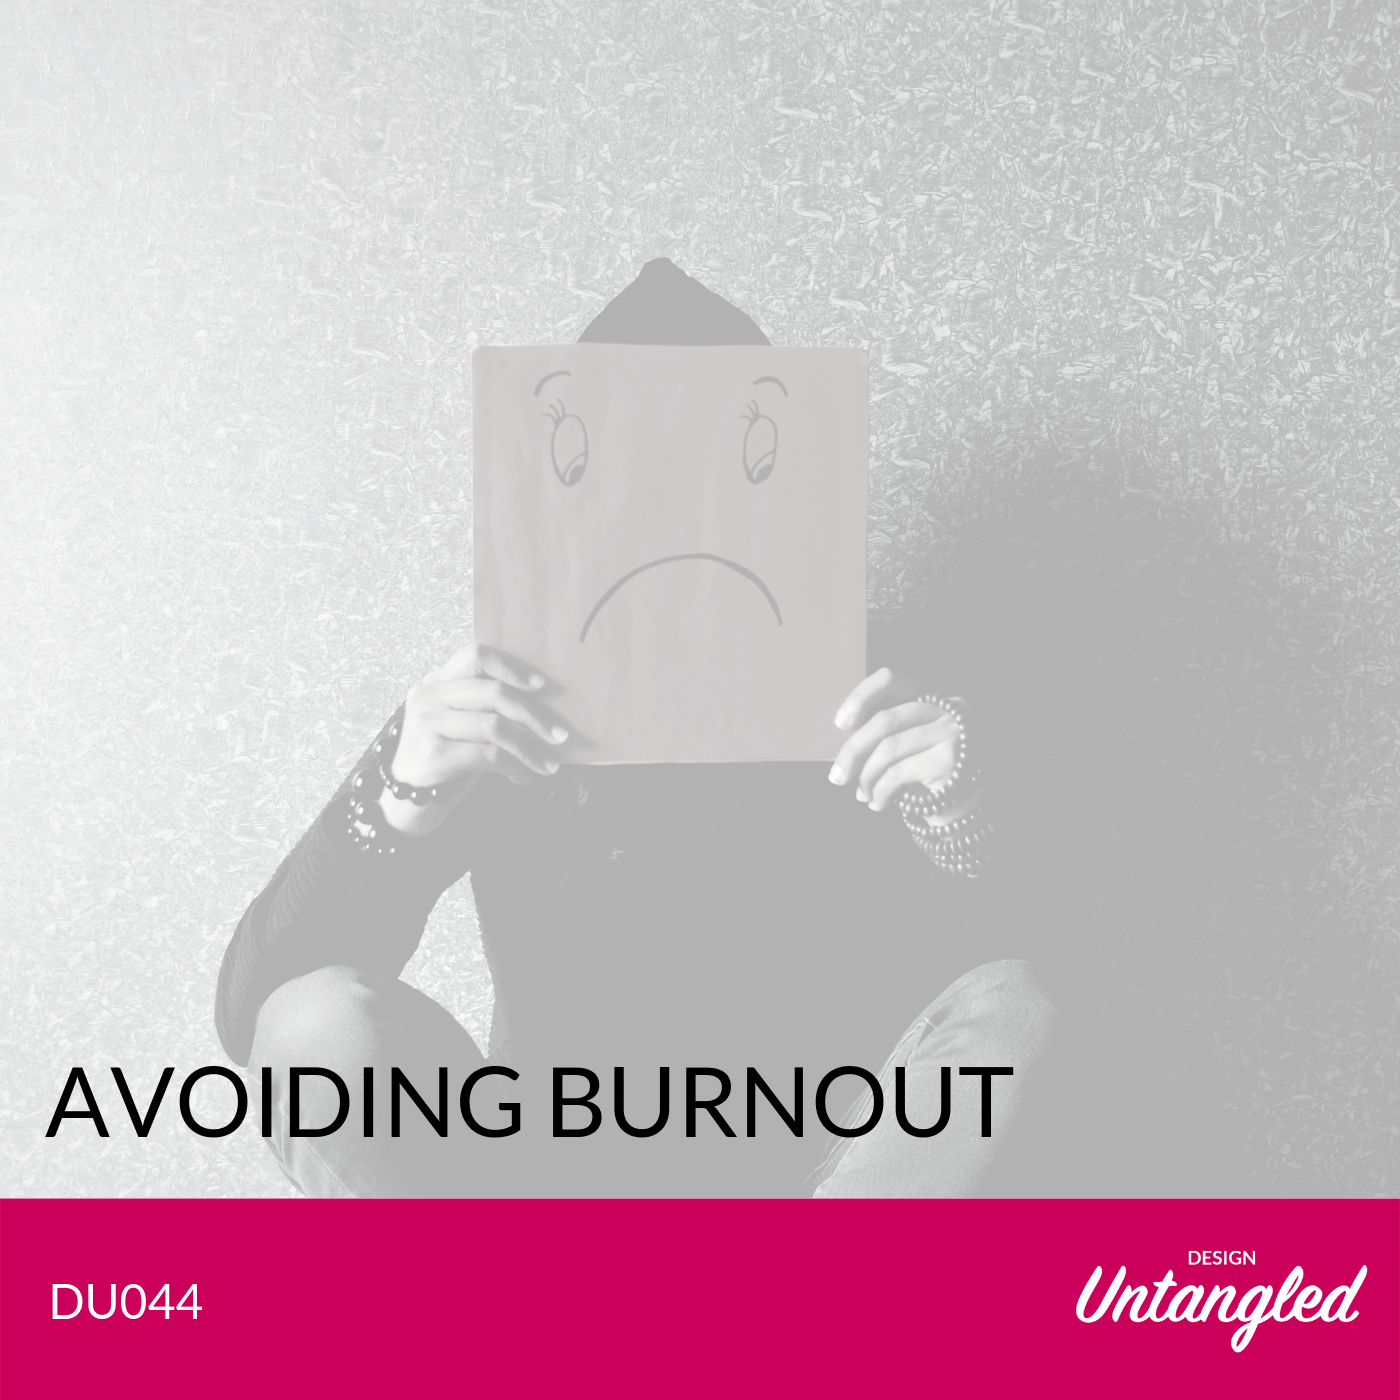 DU044 – Avoiding Burnout